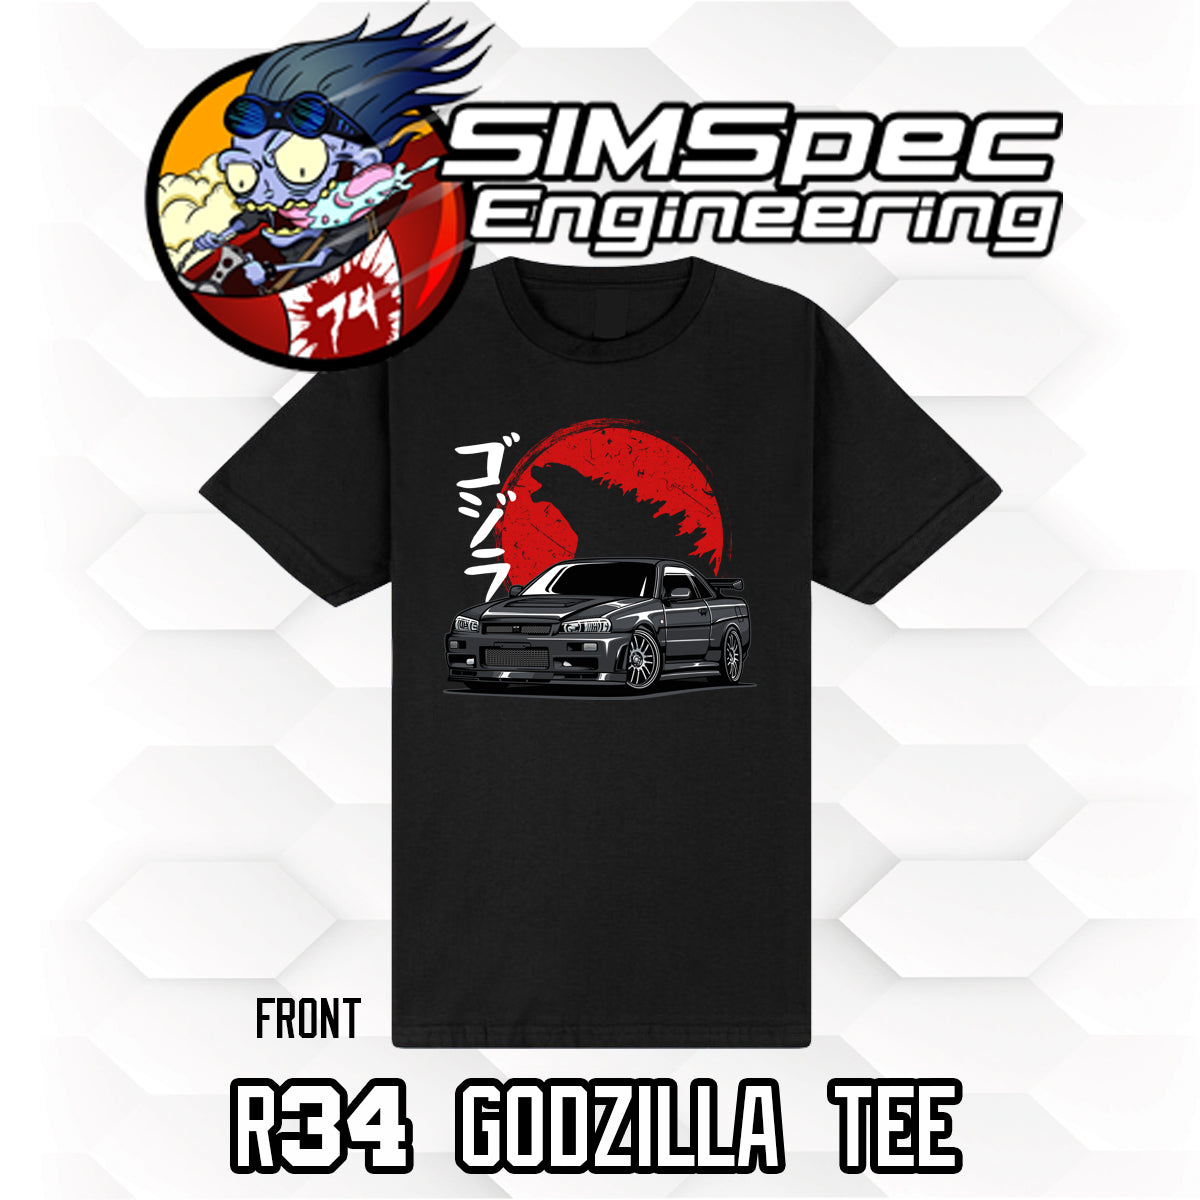 Nissan R34 Godzilla T-Shirt